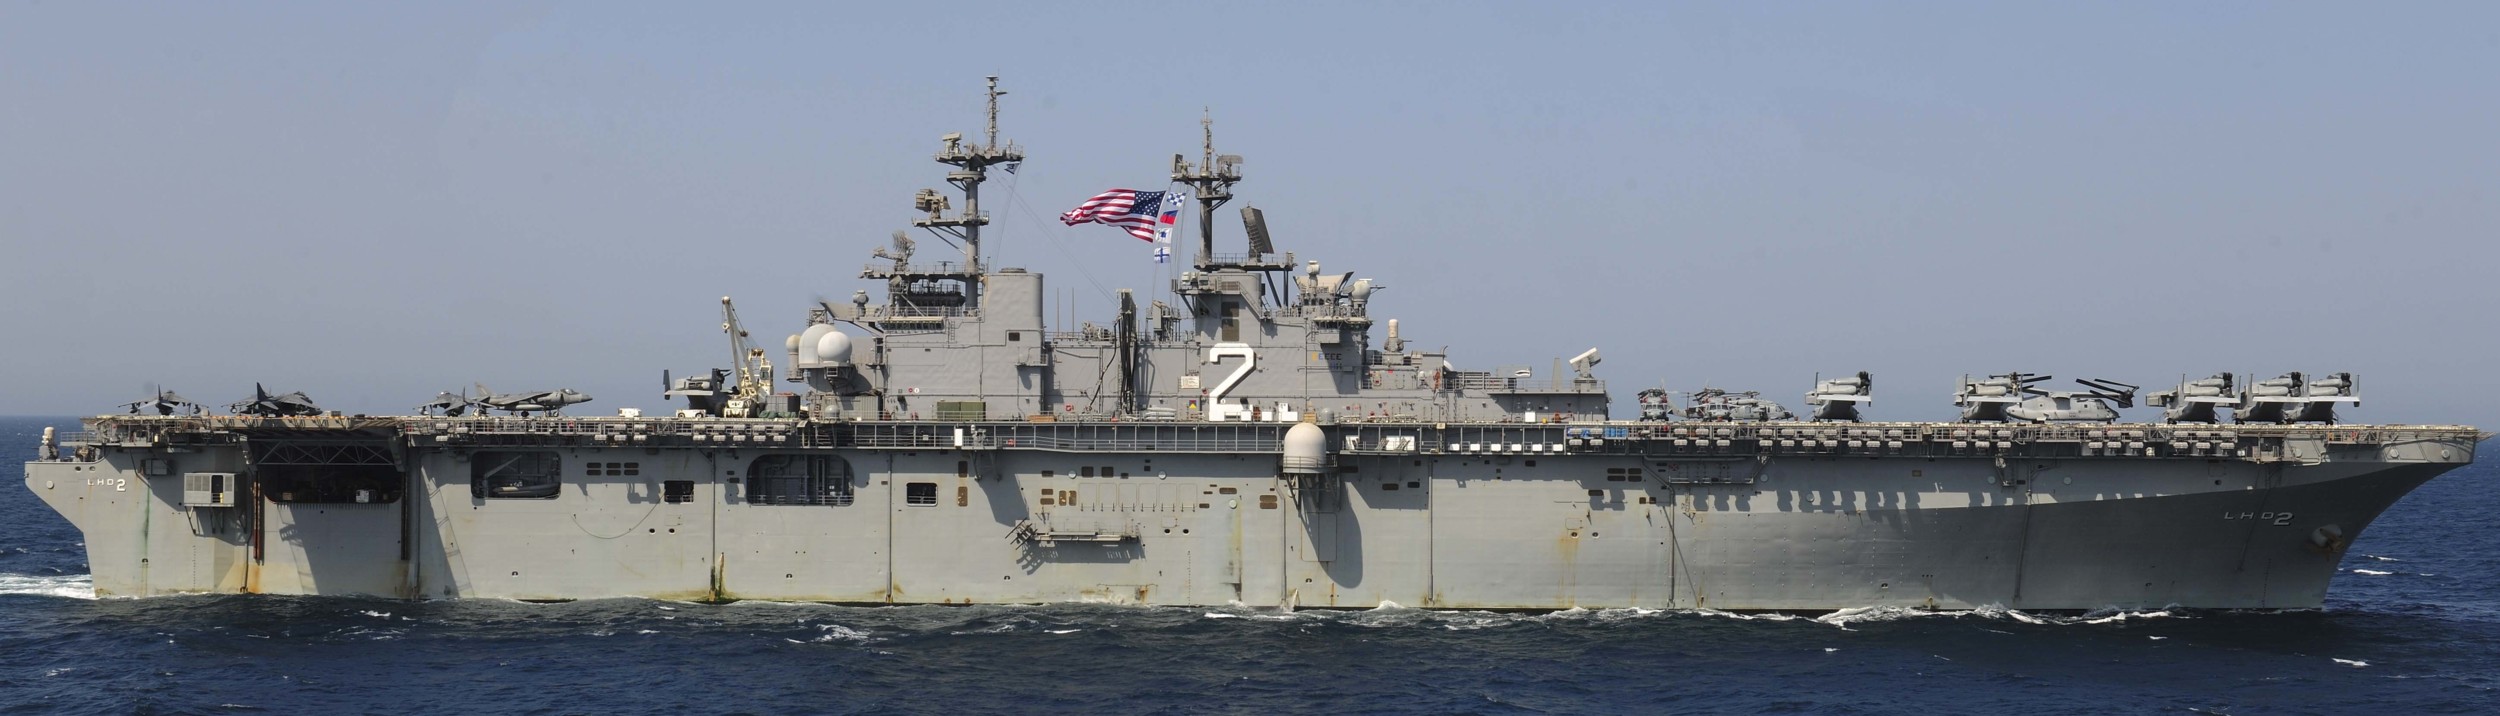 lhd-2 uss essex wasp class amphibious assault ship landing helicopter us navy marines vmm-161 142